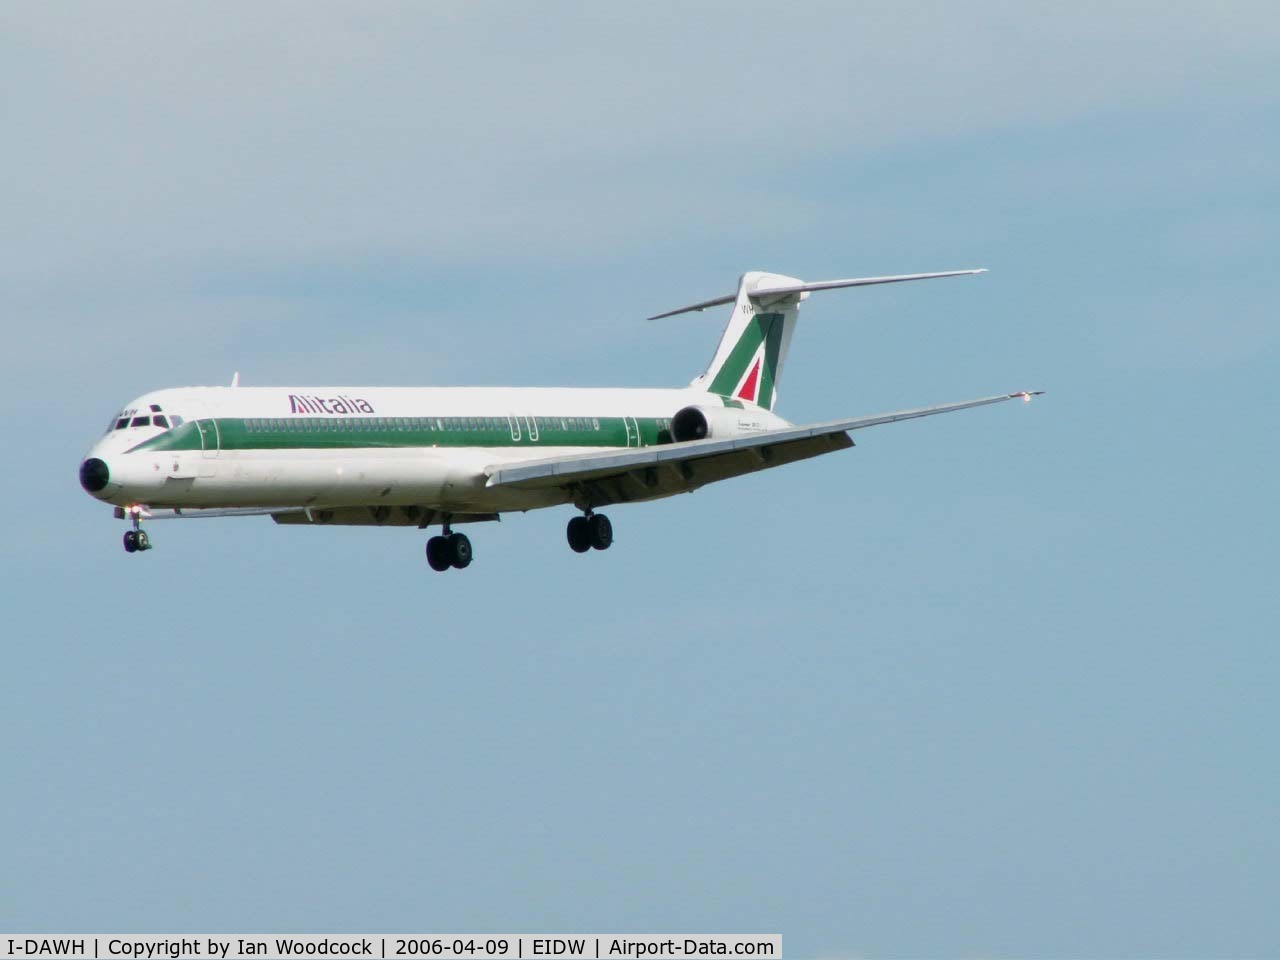 I-DAWH, 1984 McDonnell Douglas MD-82 (DC-9-82) C/N 49202/1170, MD82/Alitalia/Dublin